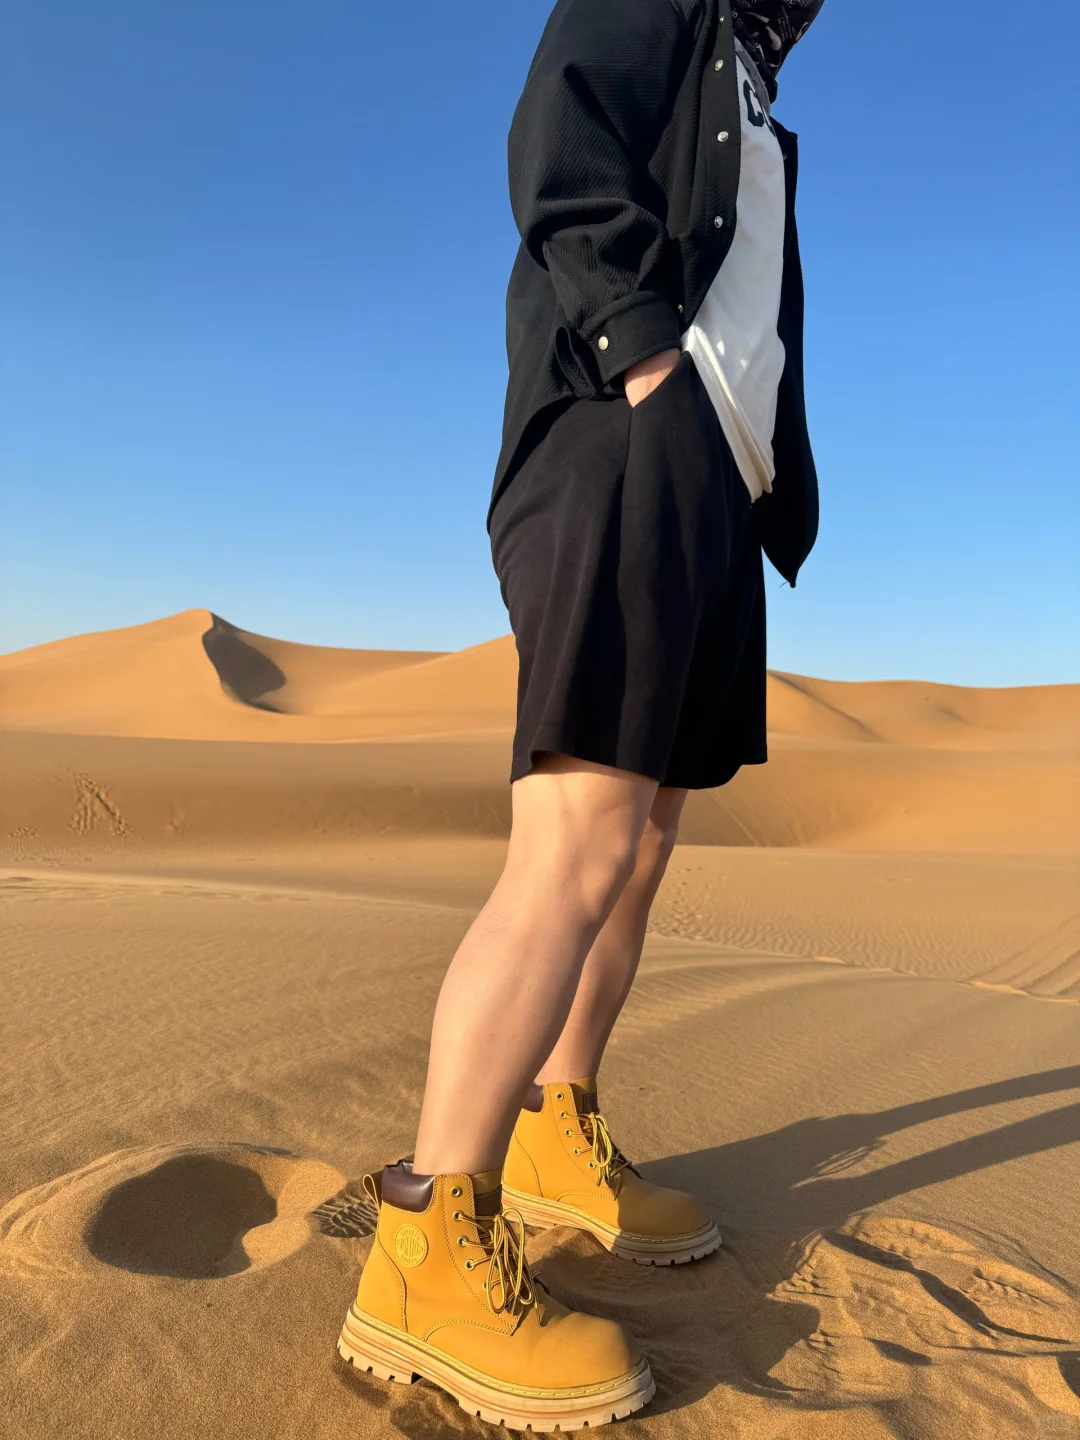 沙漠丝袜穿搭?️新风尚